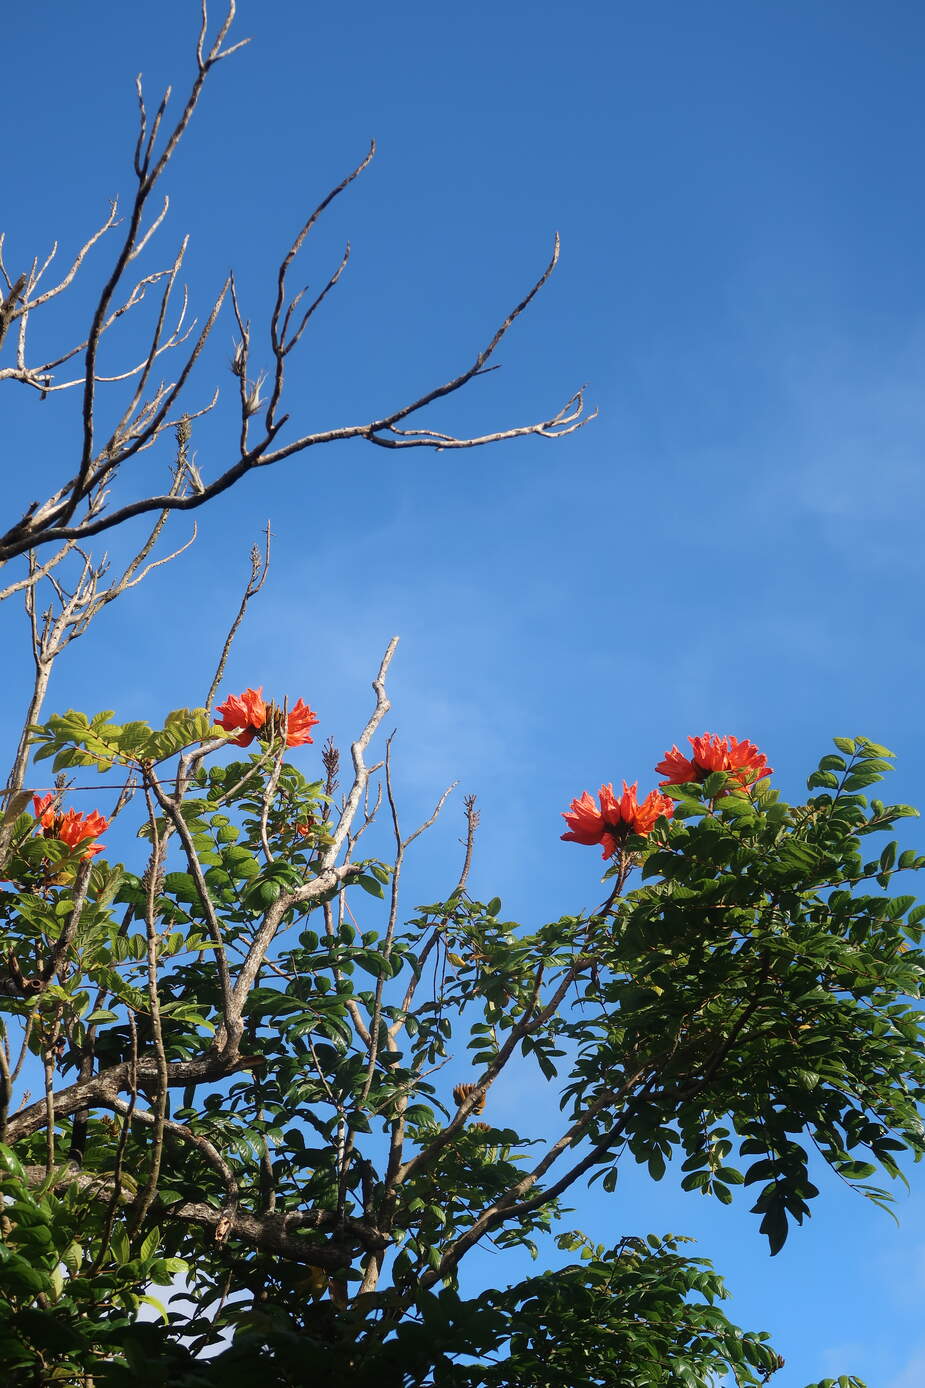 Afrikaanse Tulpenboom in de jungle van Suriname